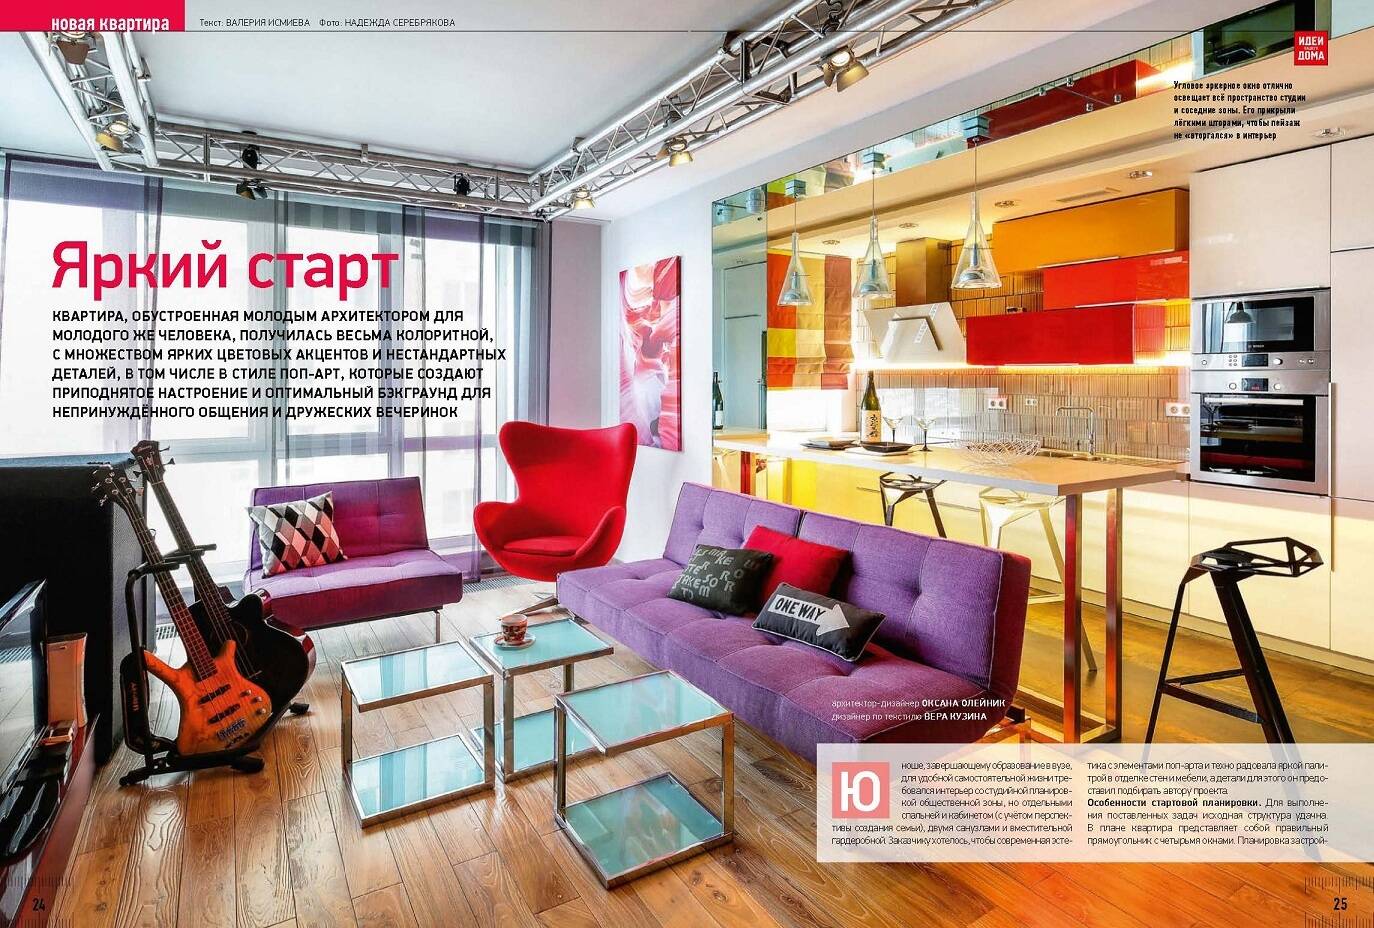 Мебель и свет Cosmorelax в 3 выпуске 2014 г. журнала «Идеи вашего дома»